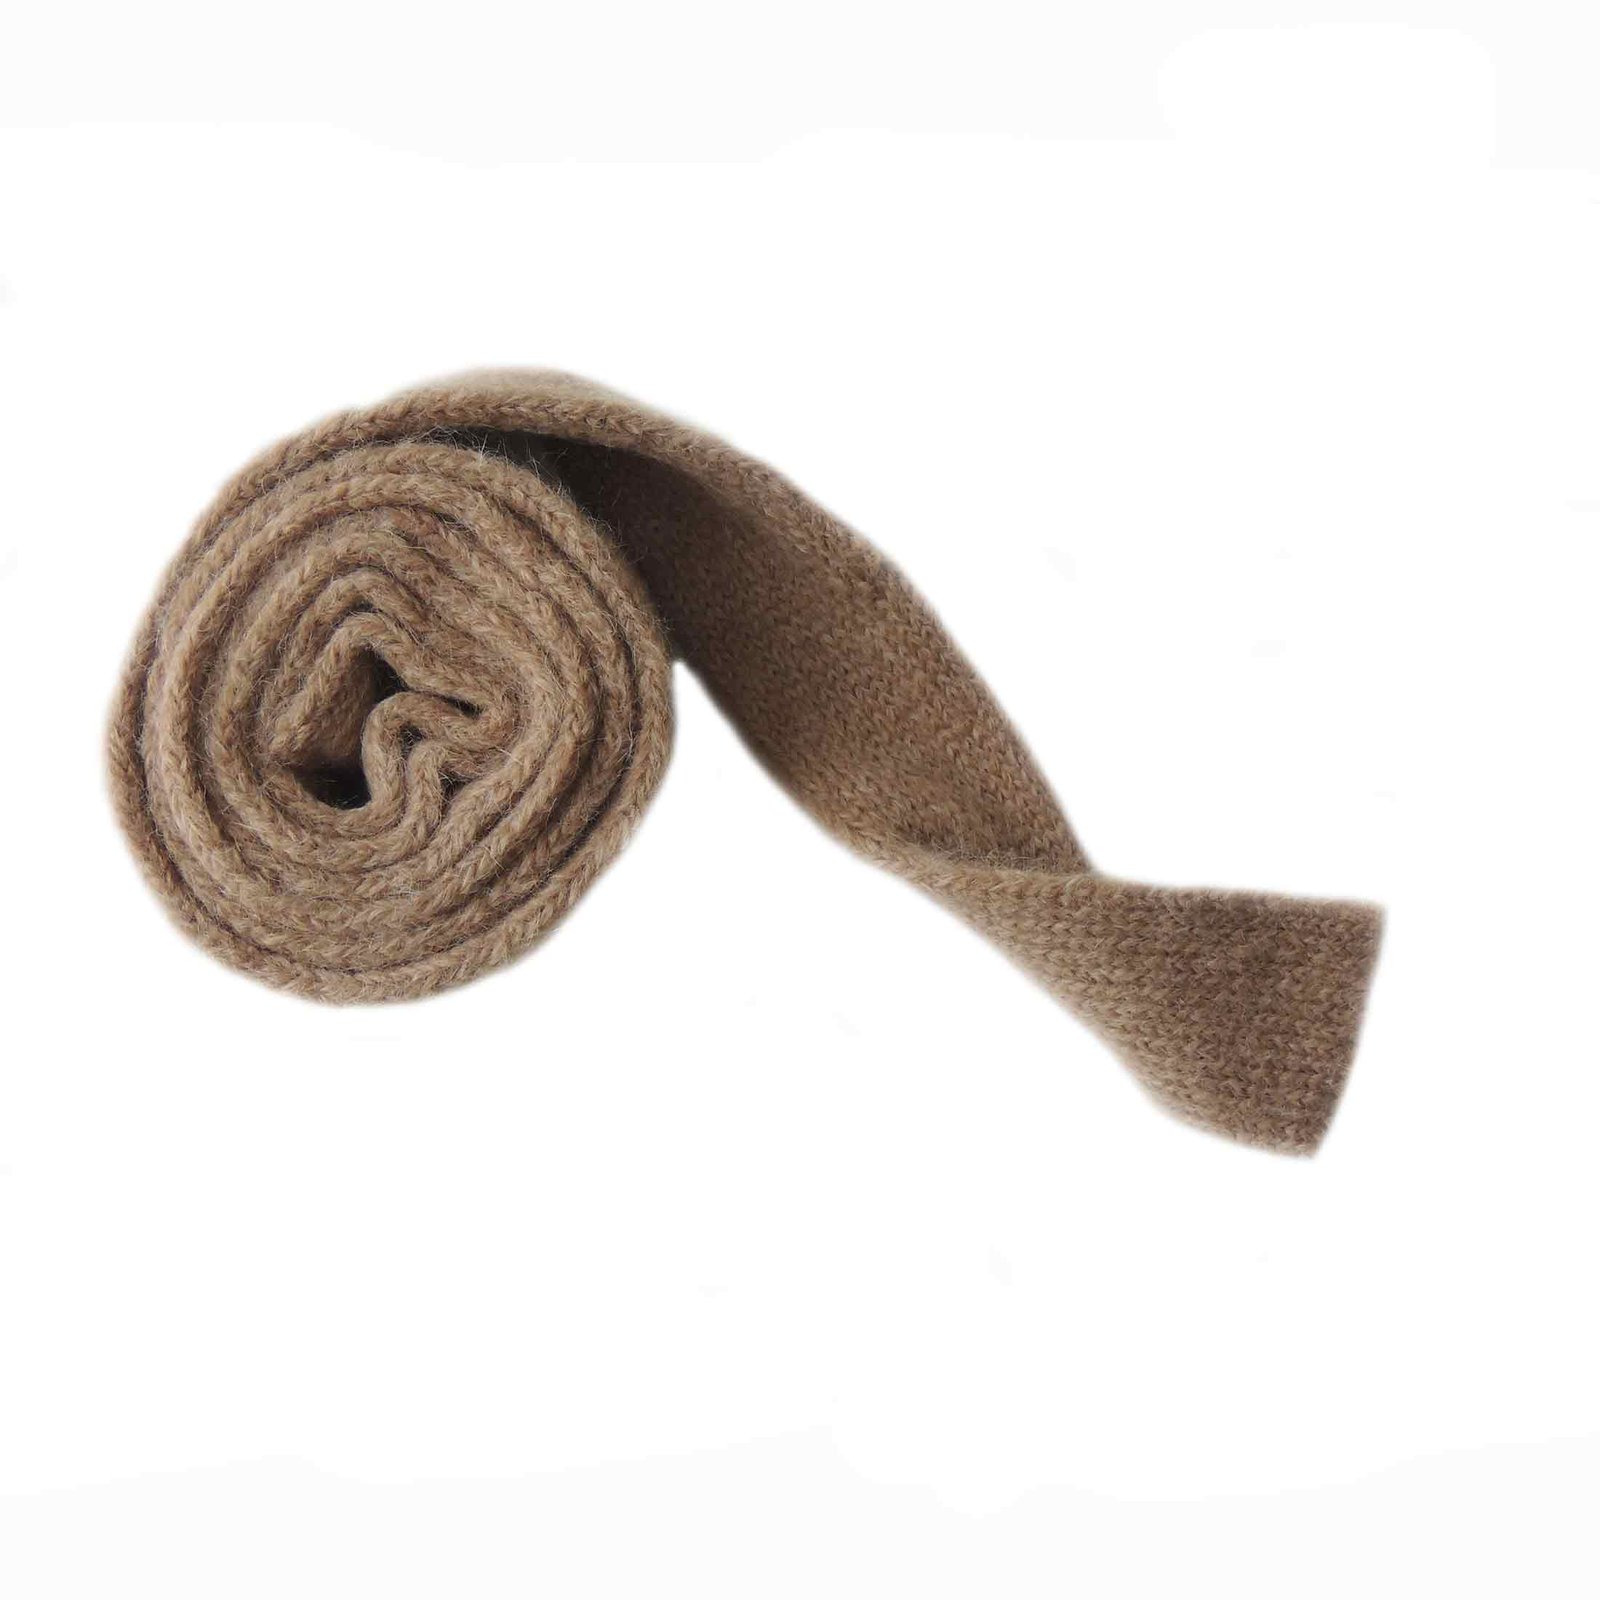 PFL knitwear Long cardigan / coat in luxery soft brushed Suri alpaca blend